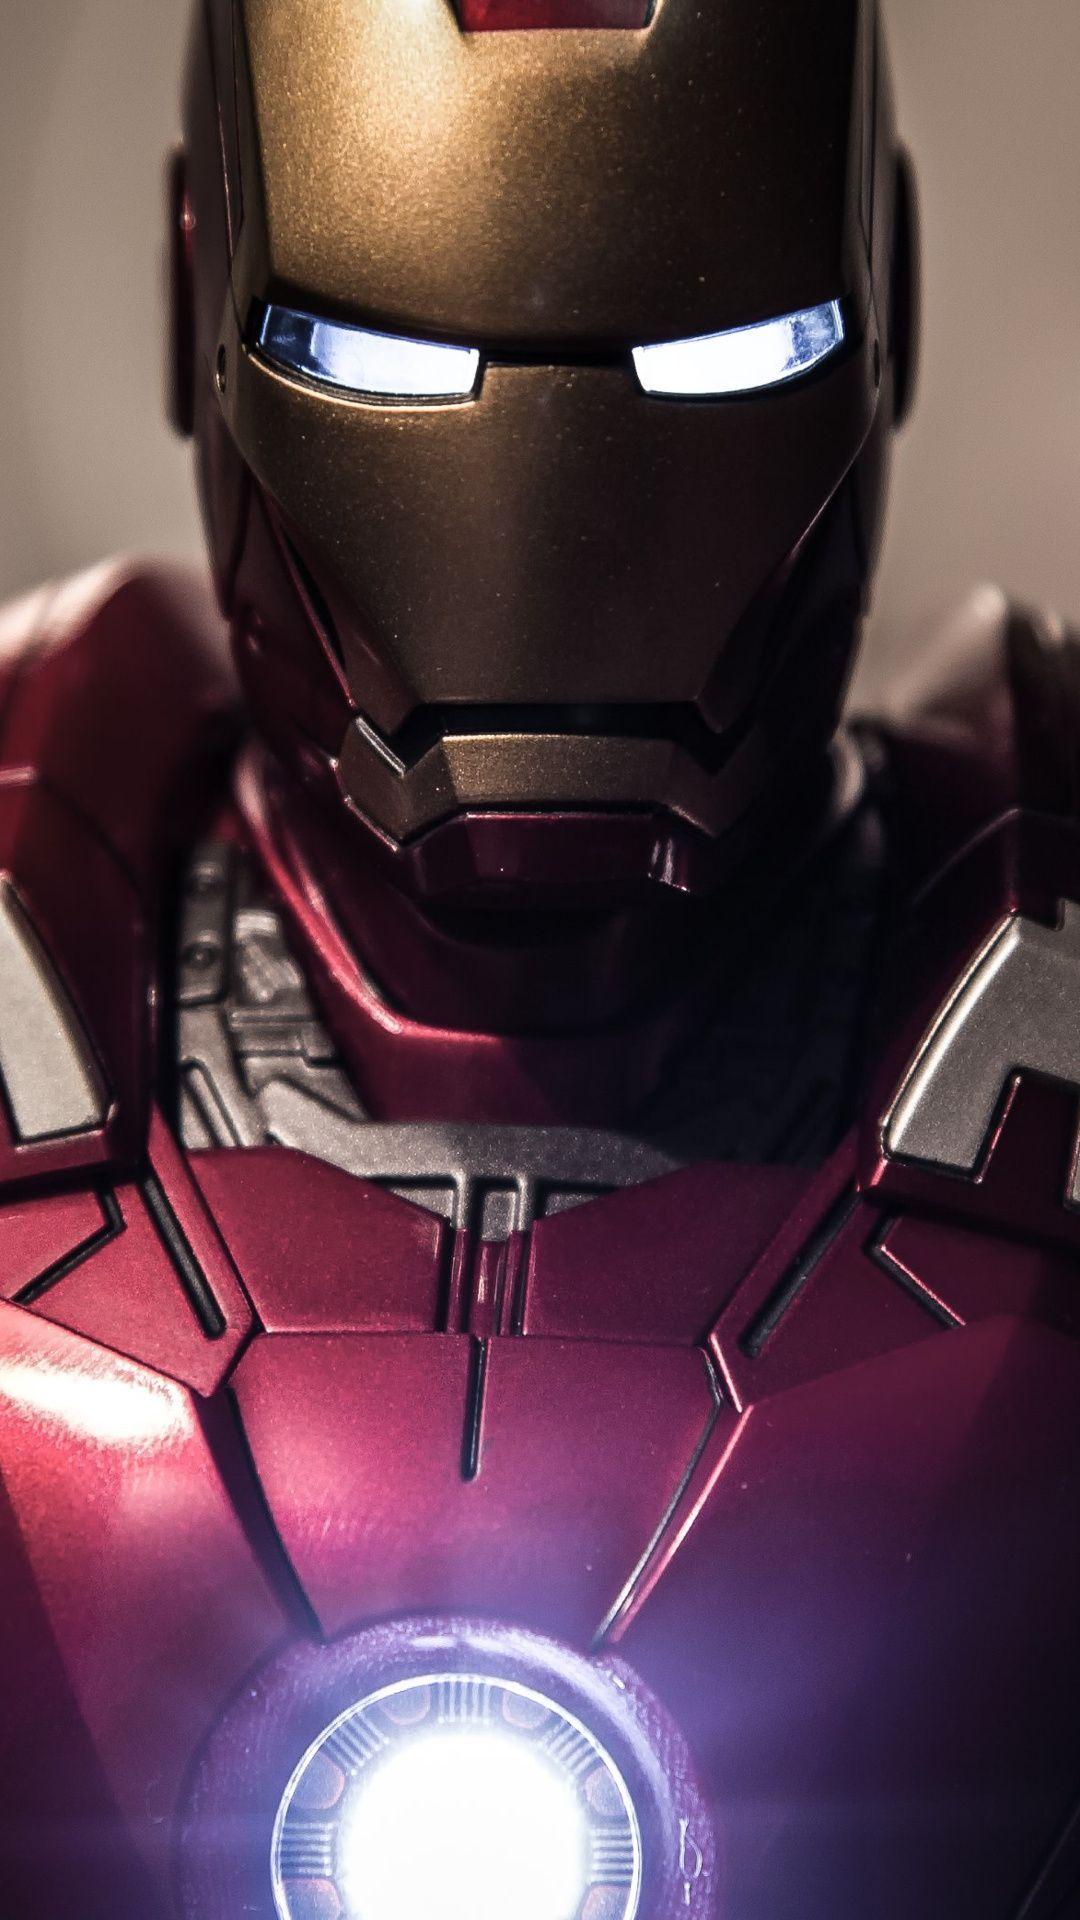 Hình nền điện thoại iron man 3d: Gửi tới bạn những hình nền điện thoại đẹp mắt về siêu anh hùng người sắt Iron Man. Khám phá không gian sống động, sống đậm tính kỹ thuật, những hình ảnh 3D sắc nét như tới từ thực tại để tôn vinh nhân vật mạnh mẽ, đầy phóng khoáng này.